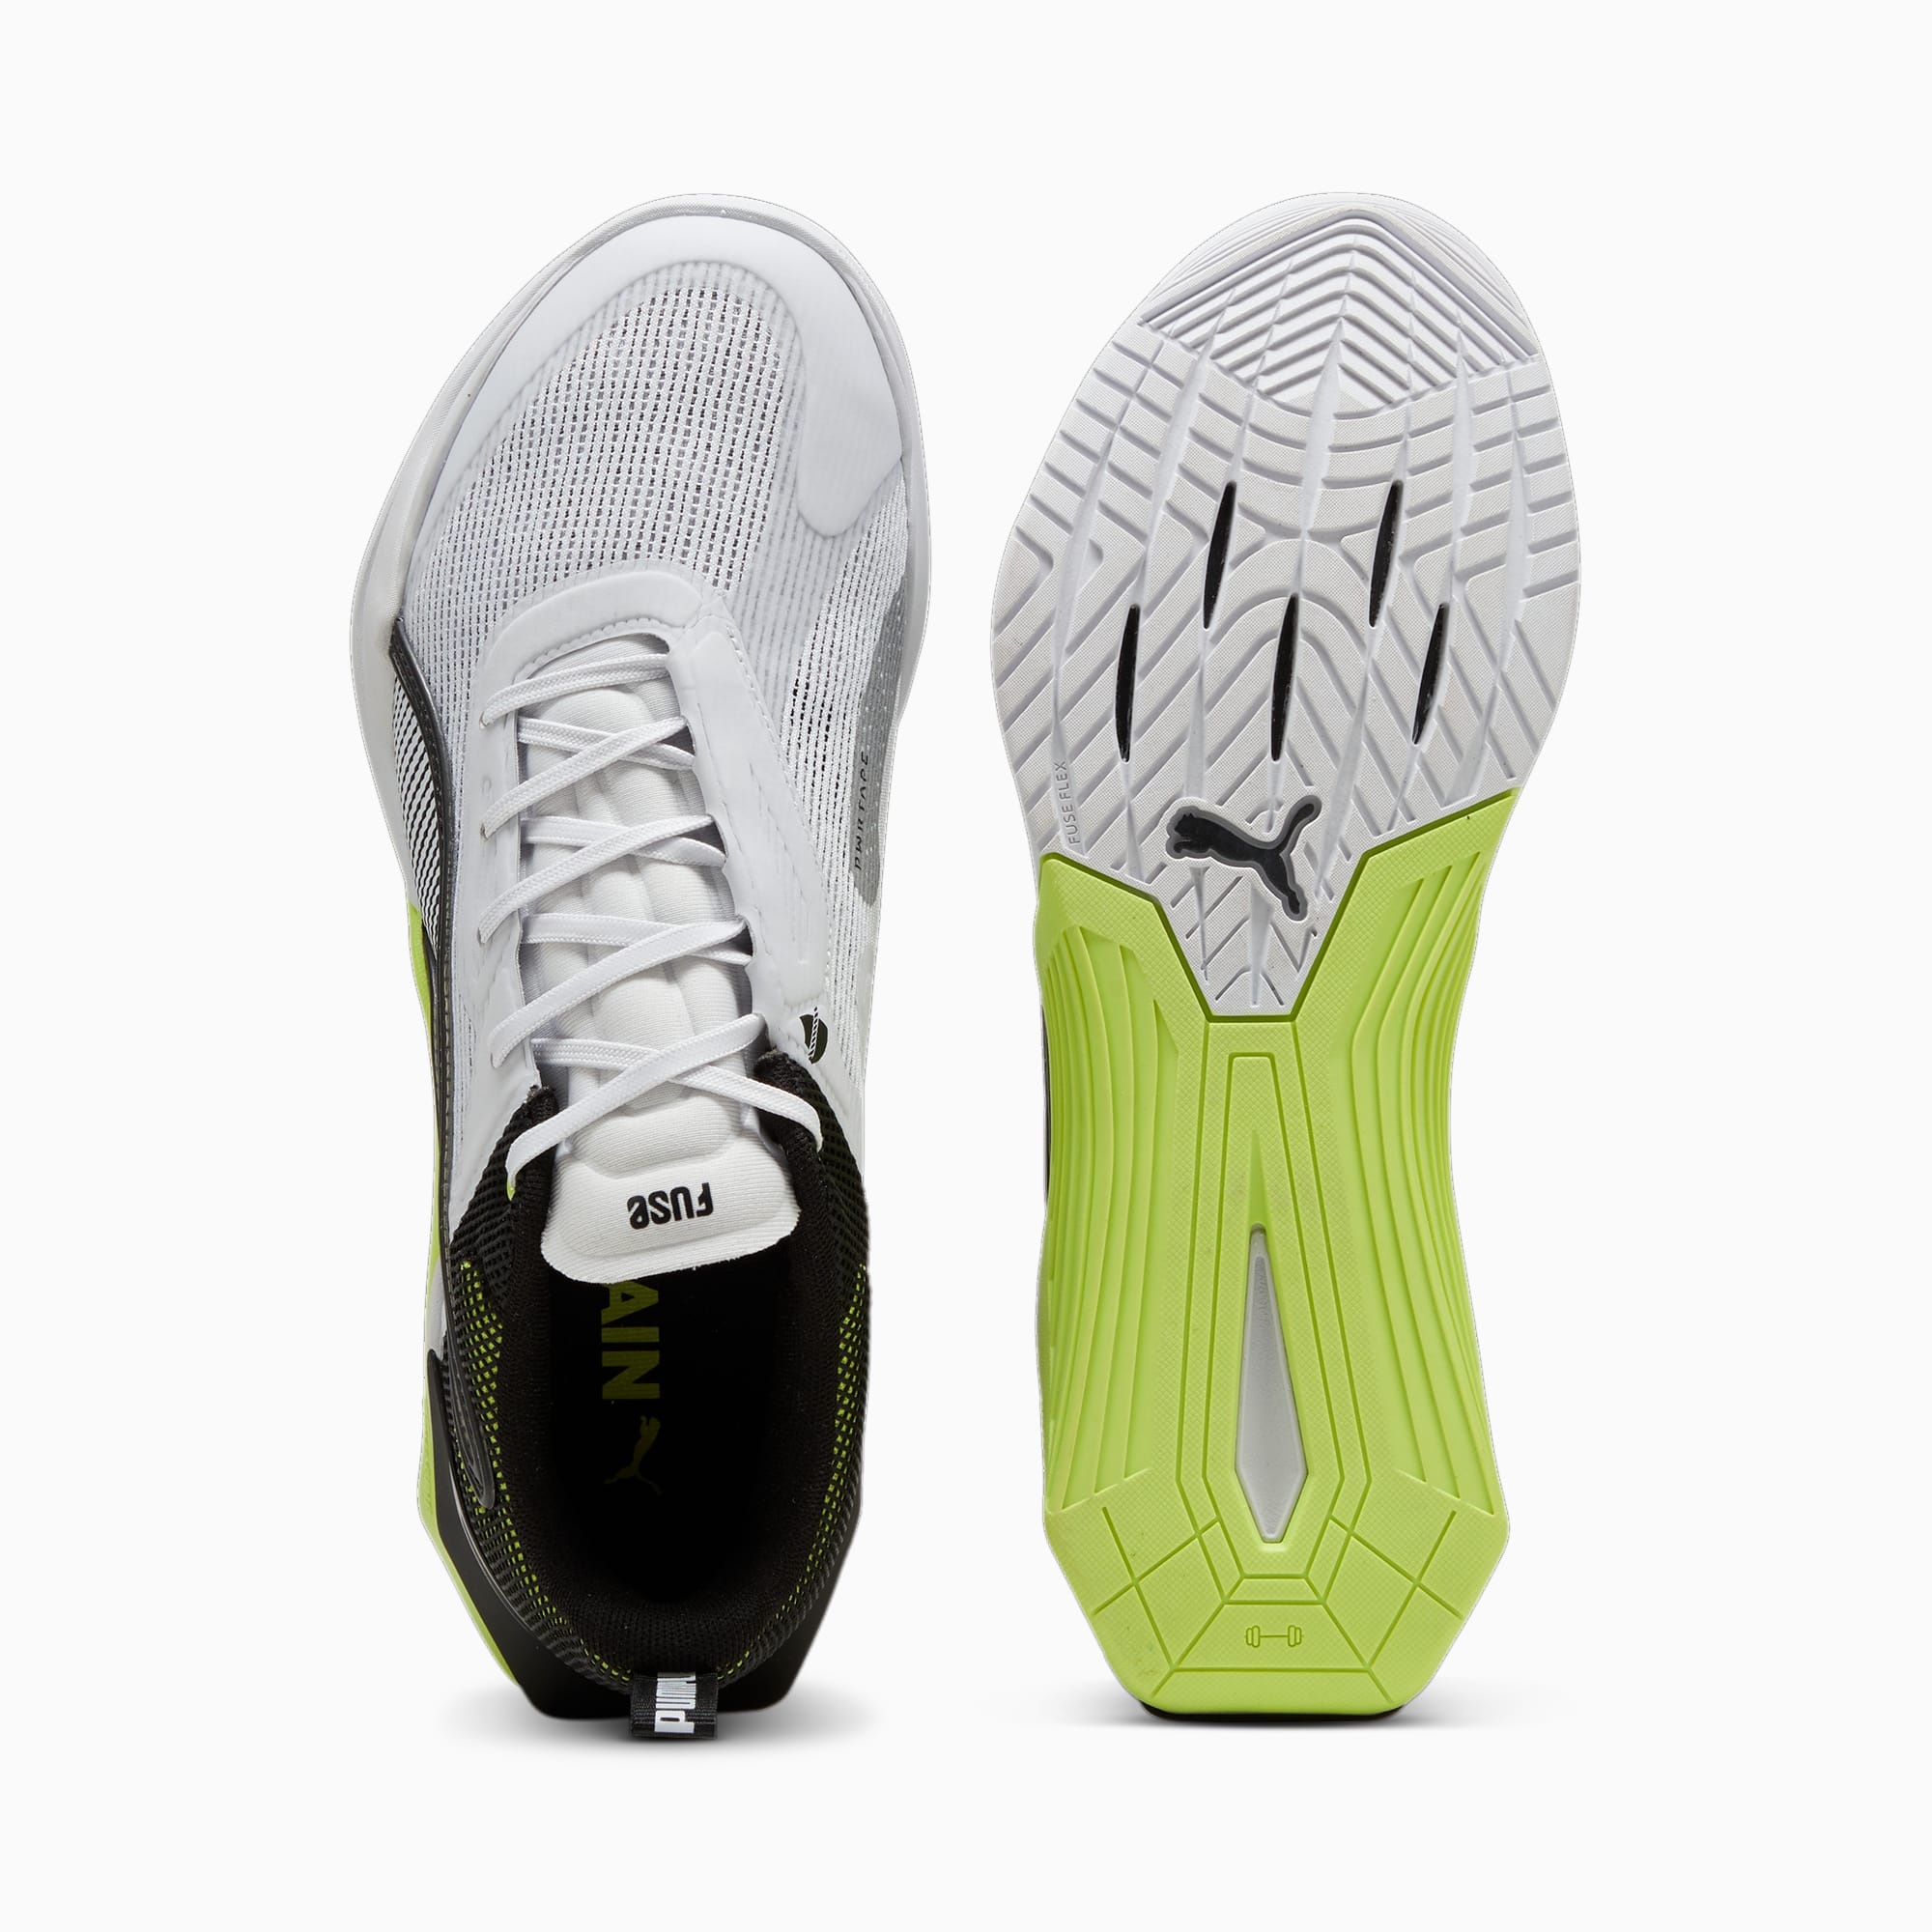 PUMA Fuse 3.0 Sportschoenen Voor Heren, Groen/Zwart/Zilver